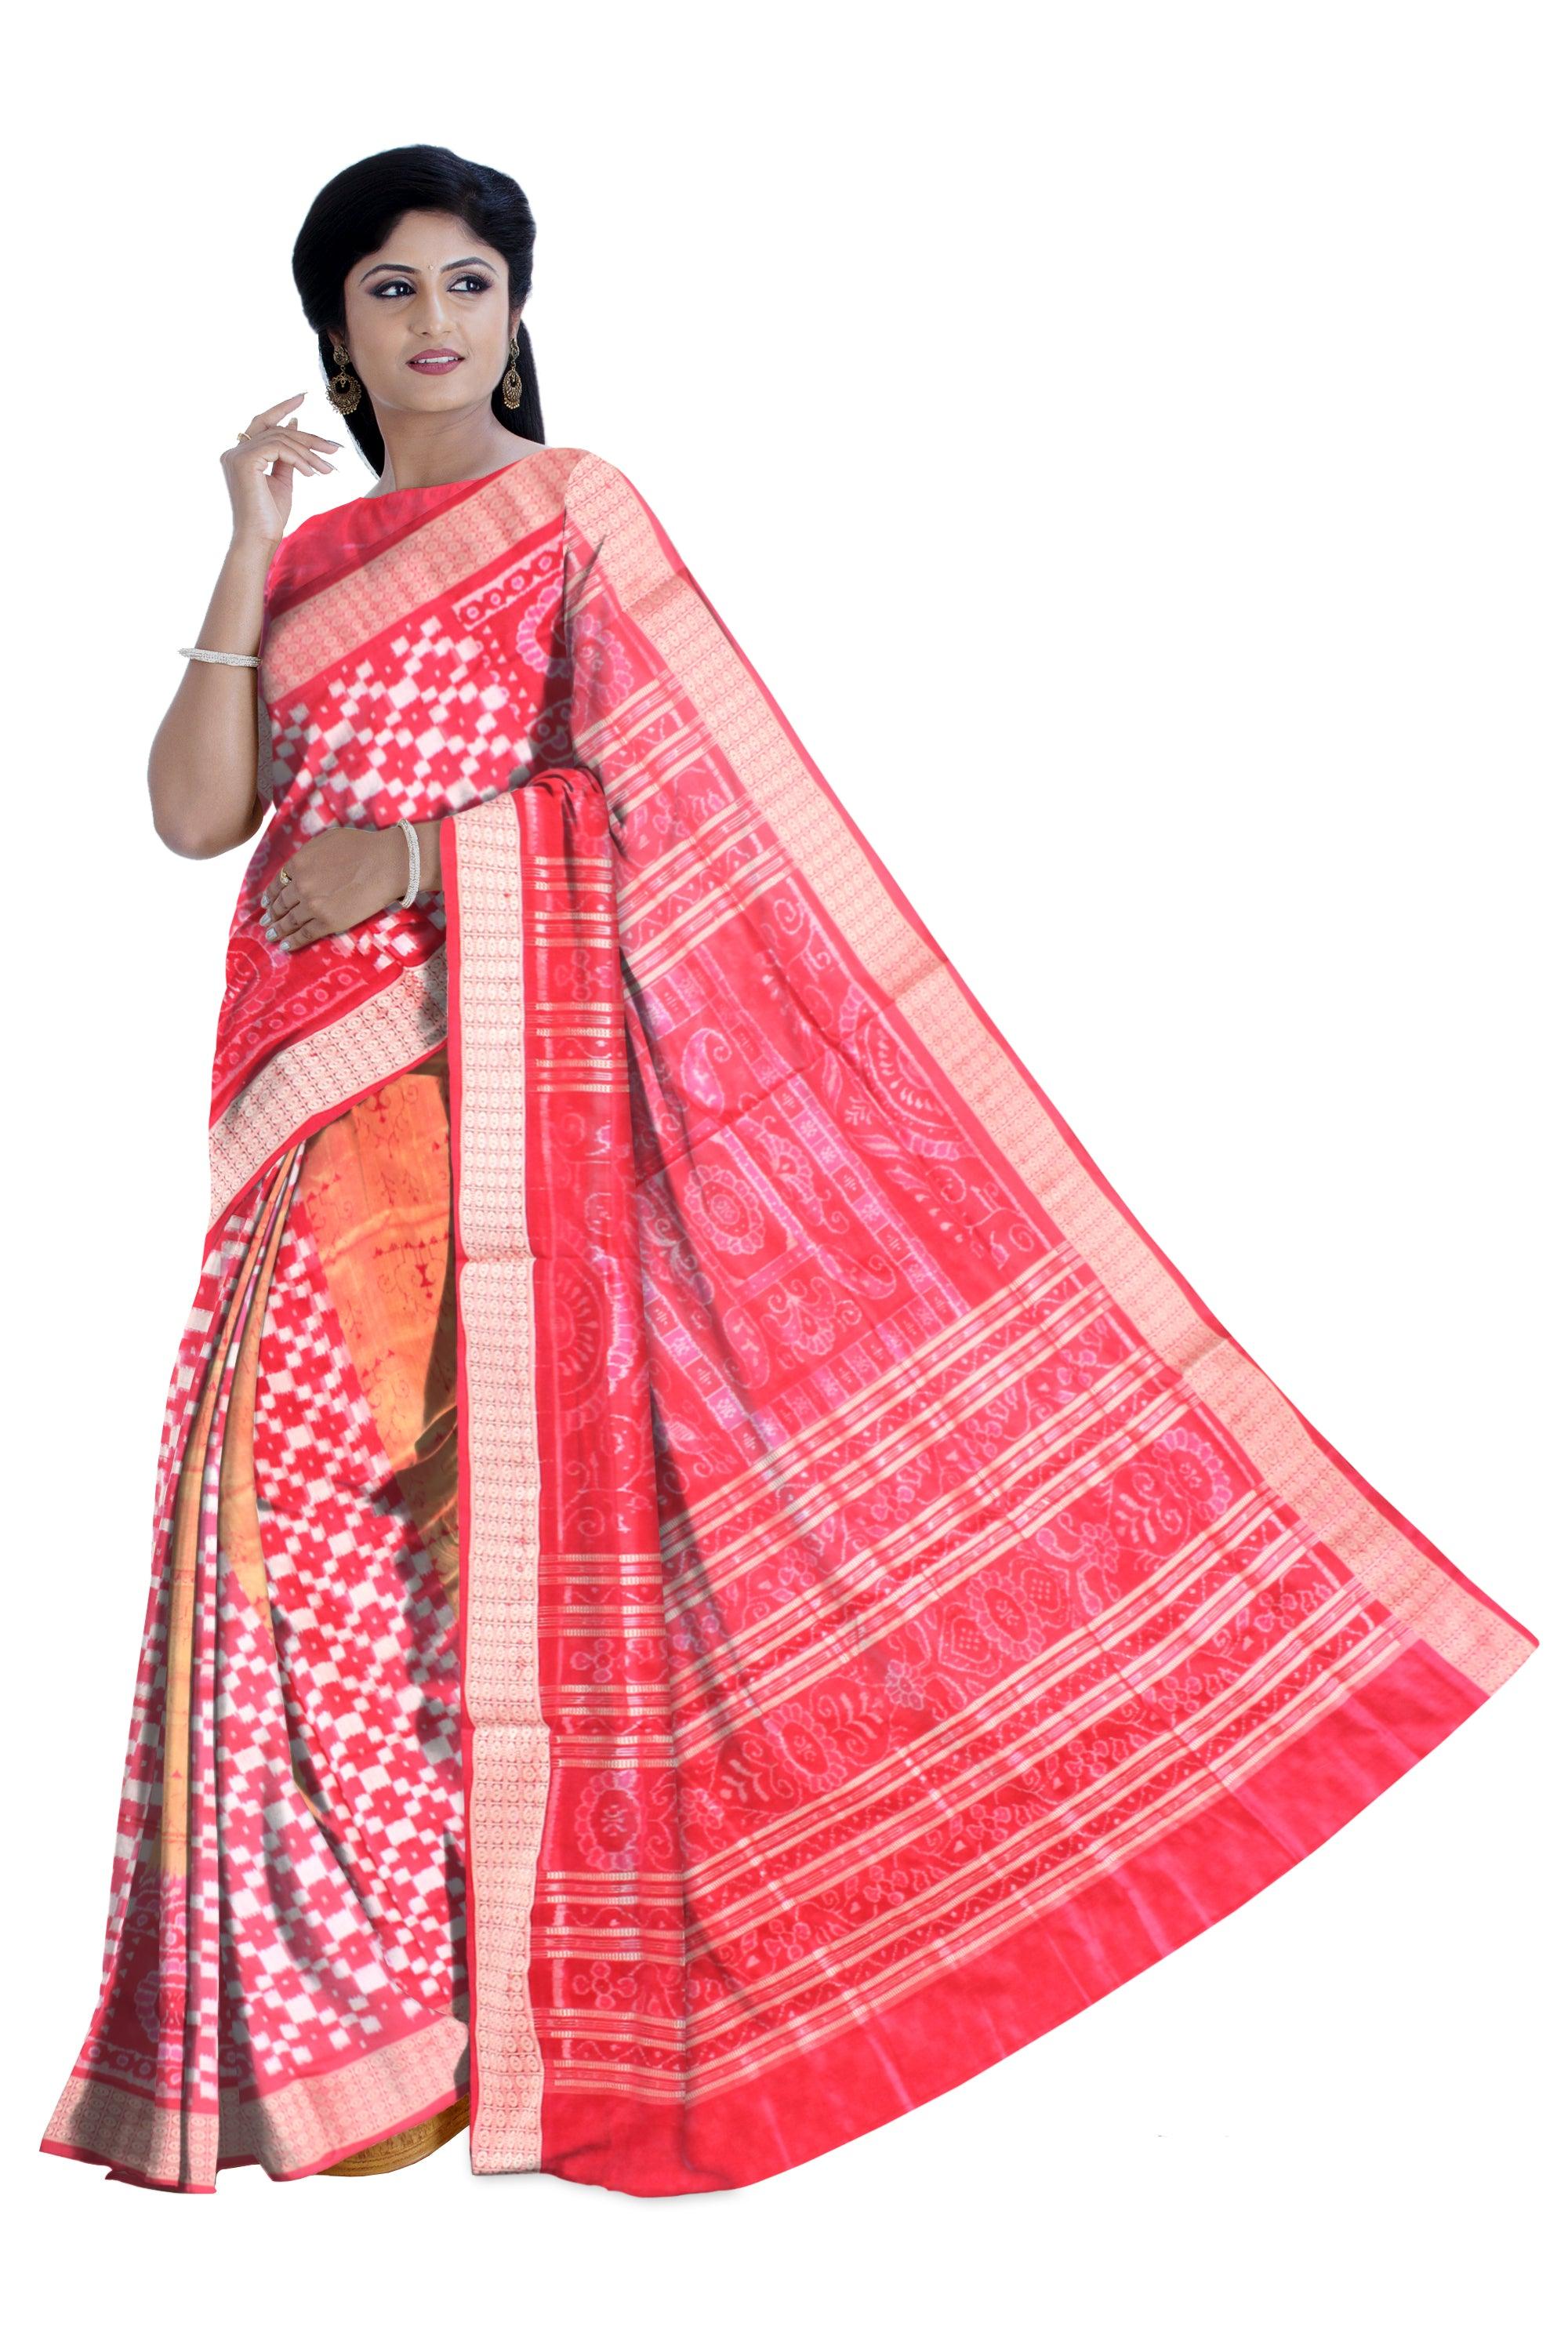 Pink color body sapta design Sambalpuri Pata saree,with blouse piece. - Koshali Arts & Crafts Enterprise